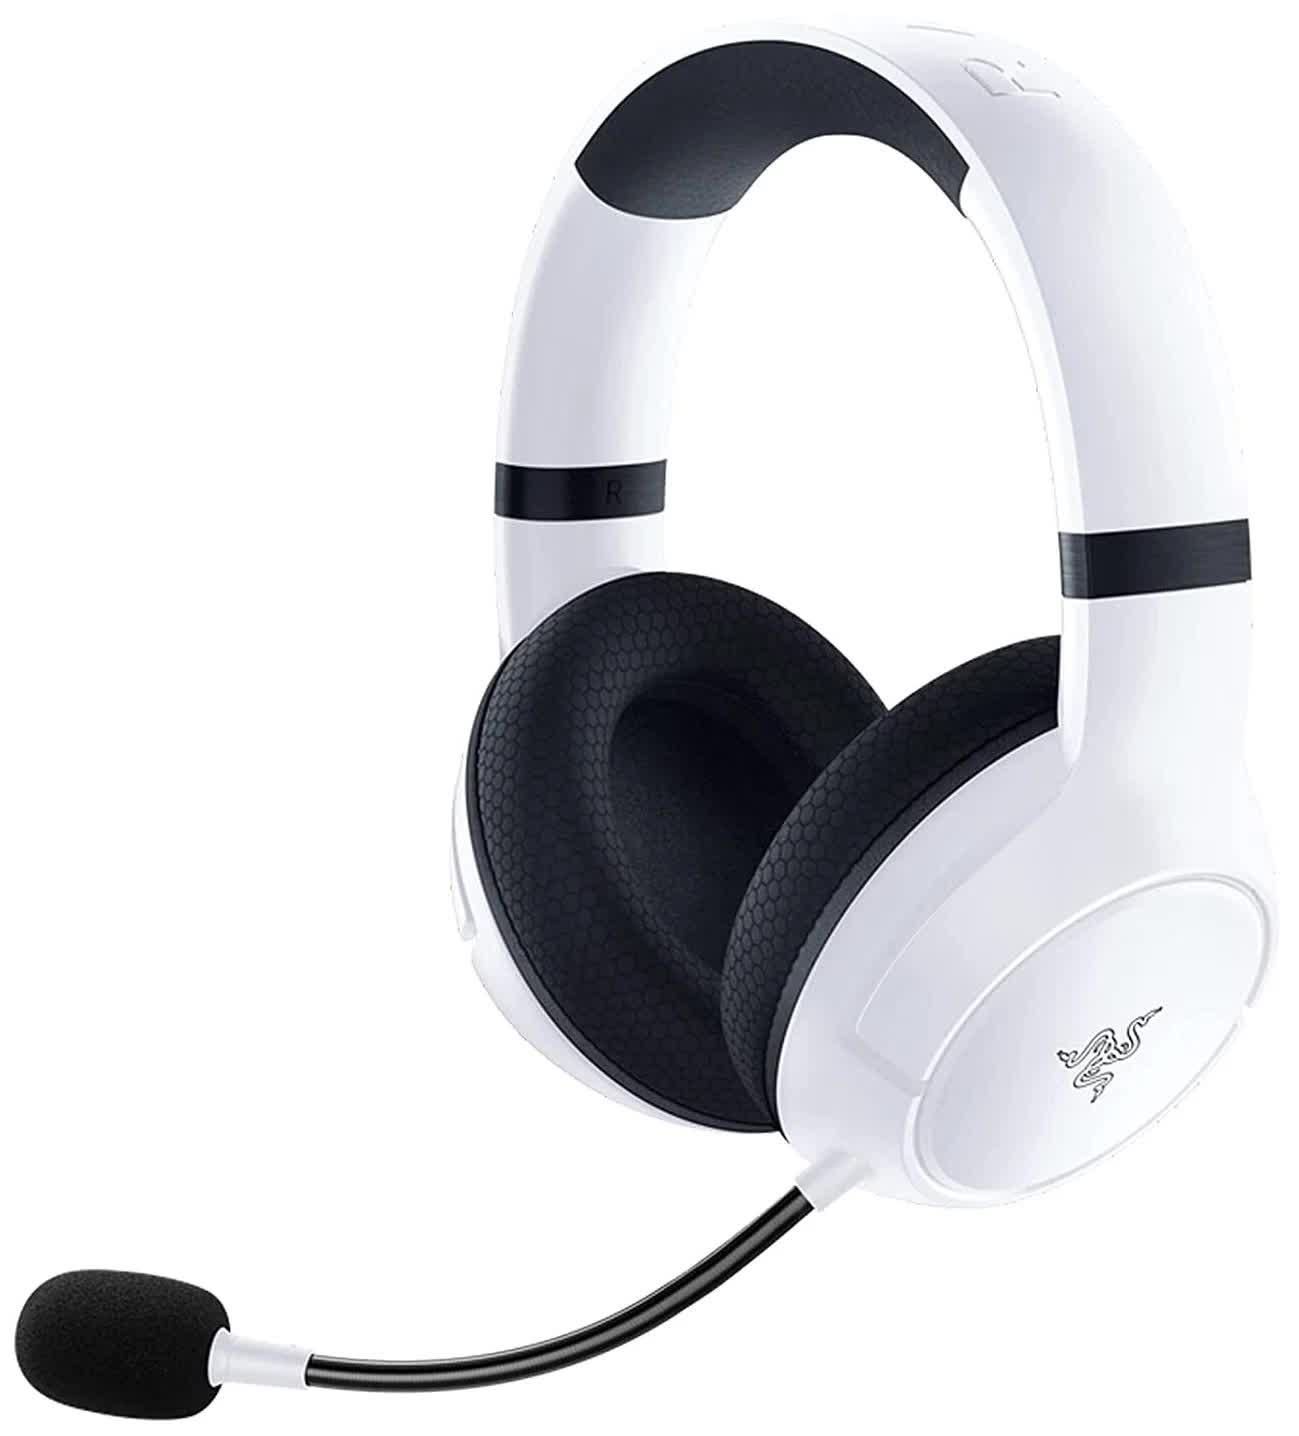 Наушники Razer Kaira for Xbox - Wireless Gaming Headset for Xbox Series X S - White компьютерная гарнитура razer kaira for xbox